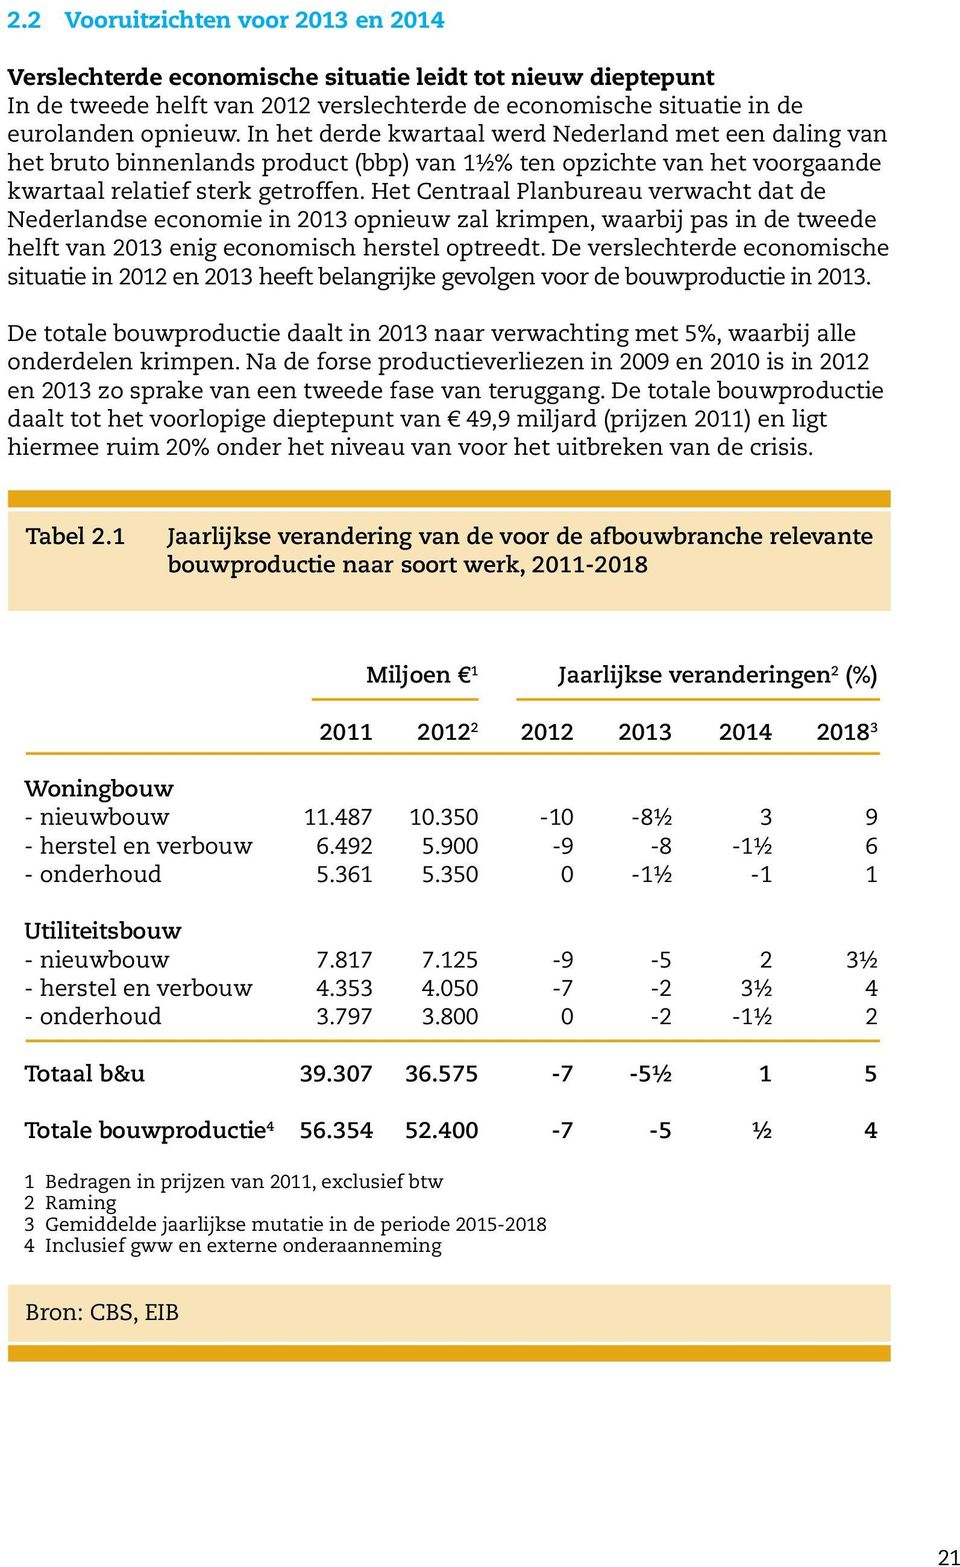 Het Centraal Planbureau verwacht dat de Nederlandse economie in 2013 opnieuw zal krimpen, waarbij pas in de tweede helft van 2013 enig economisch herstel optreedt.